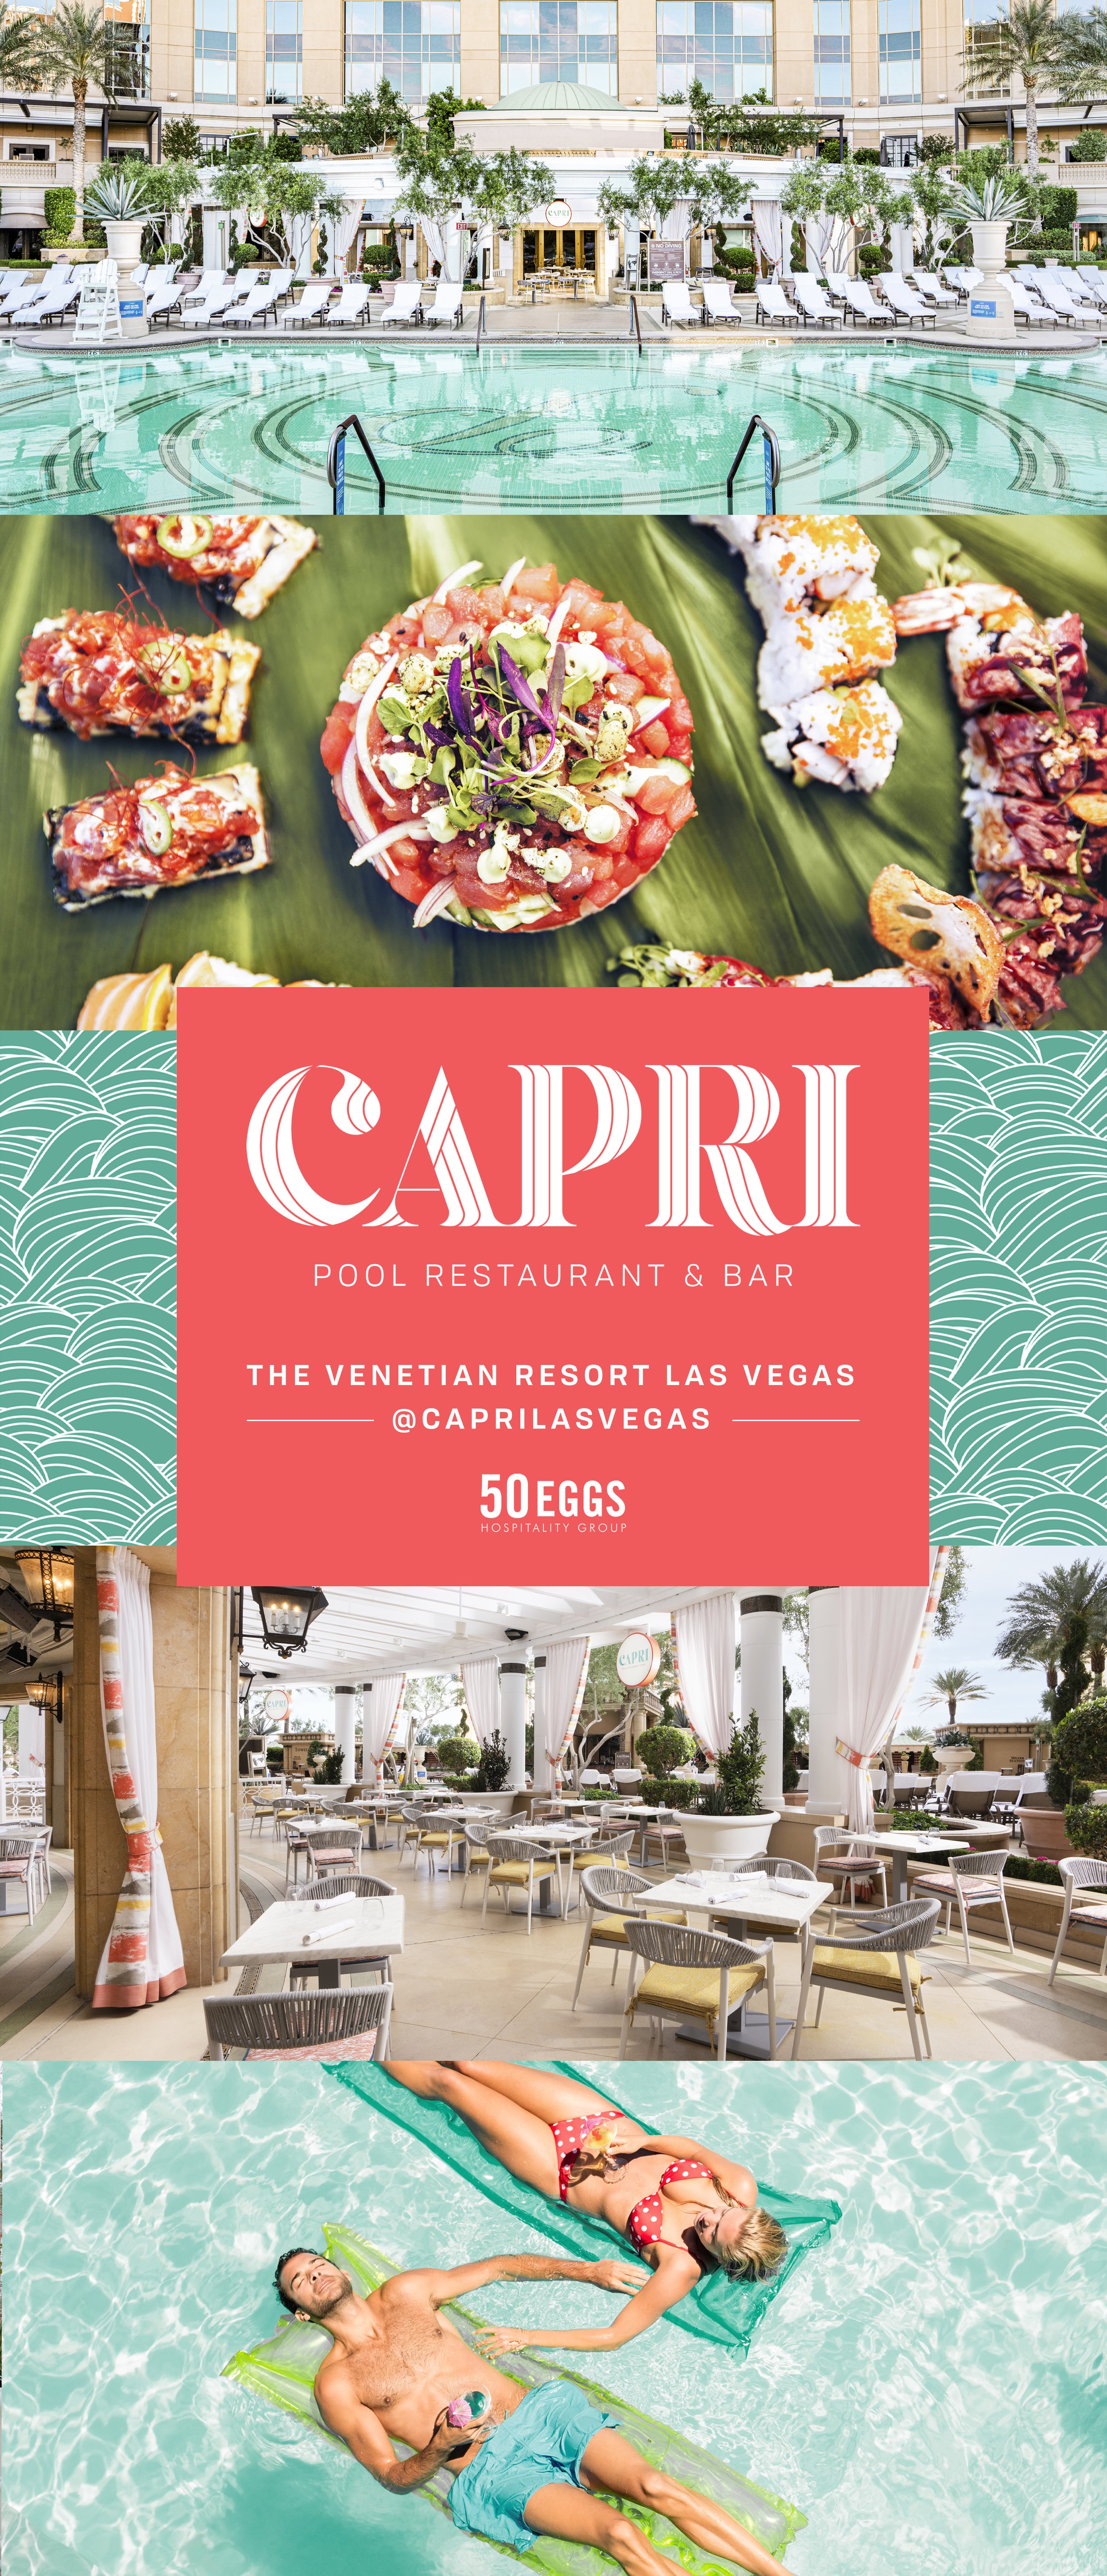 Capri at The Venetian Resort 2